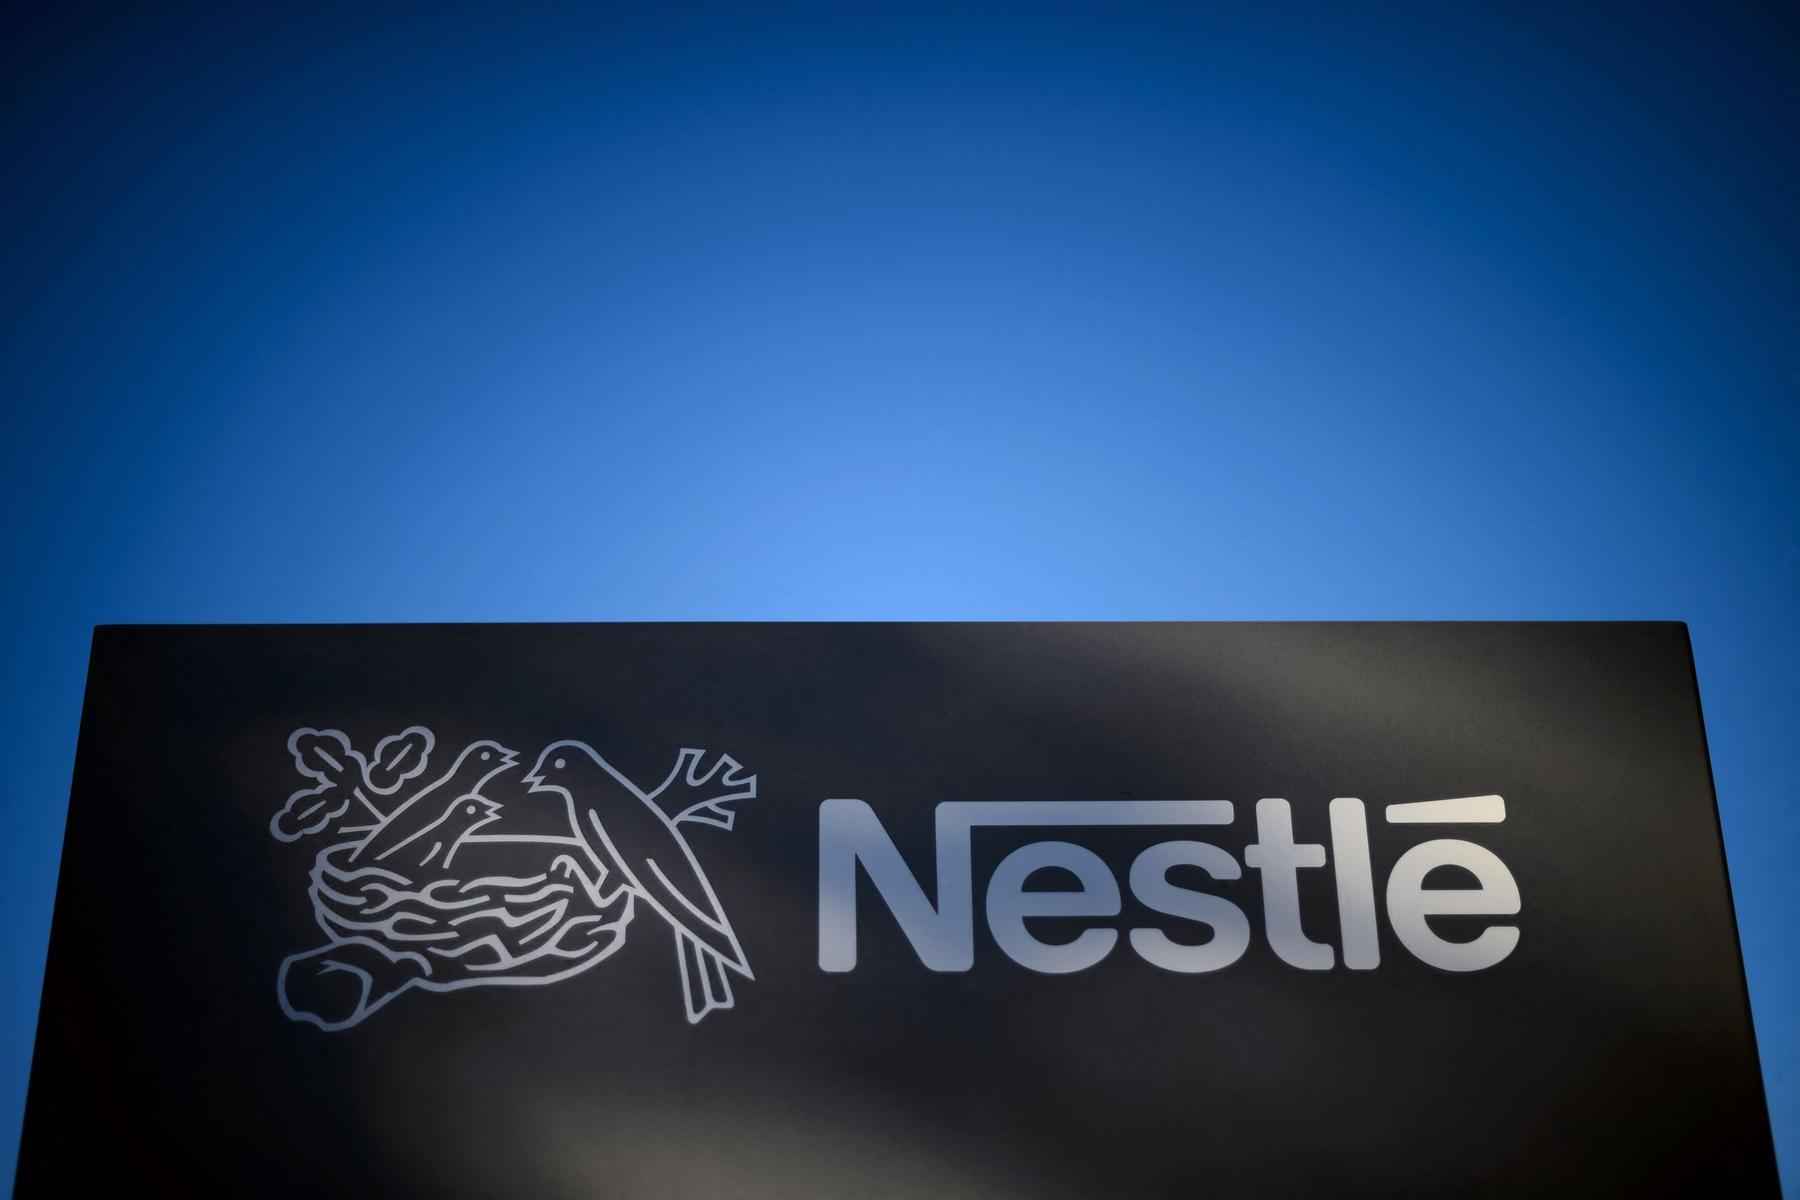 Cade analisará compra da Garoto pela Nestlé em 2002 na próxima quarta-feira - Fabrice COFFRINI/AFP